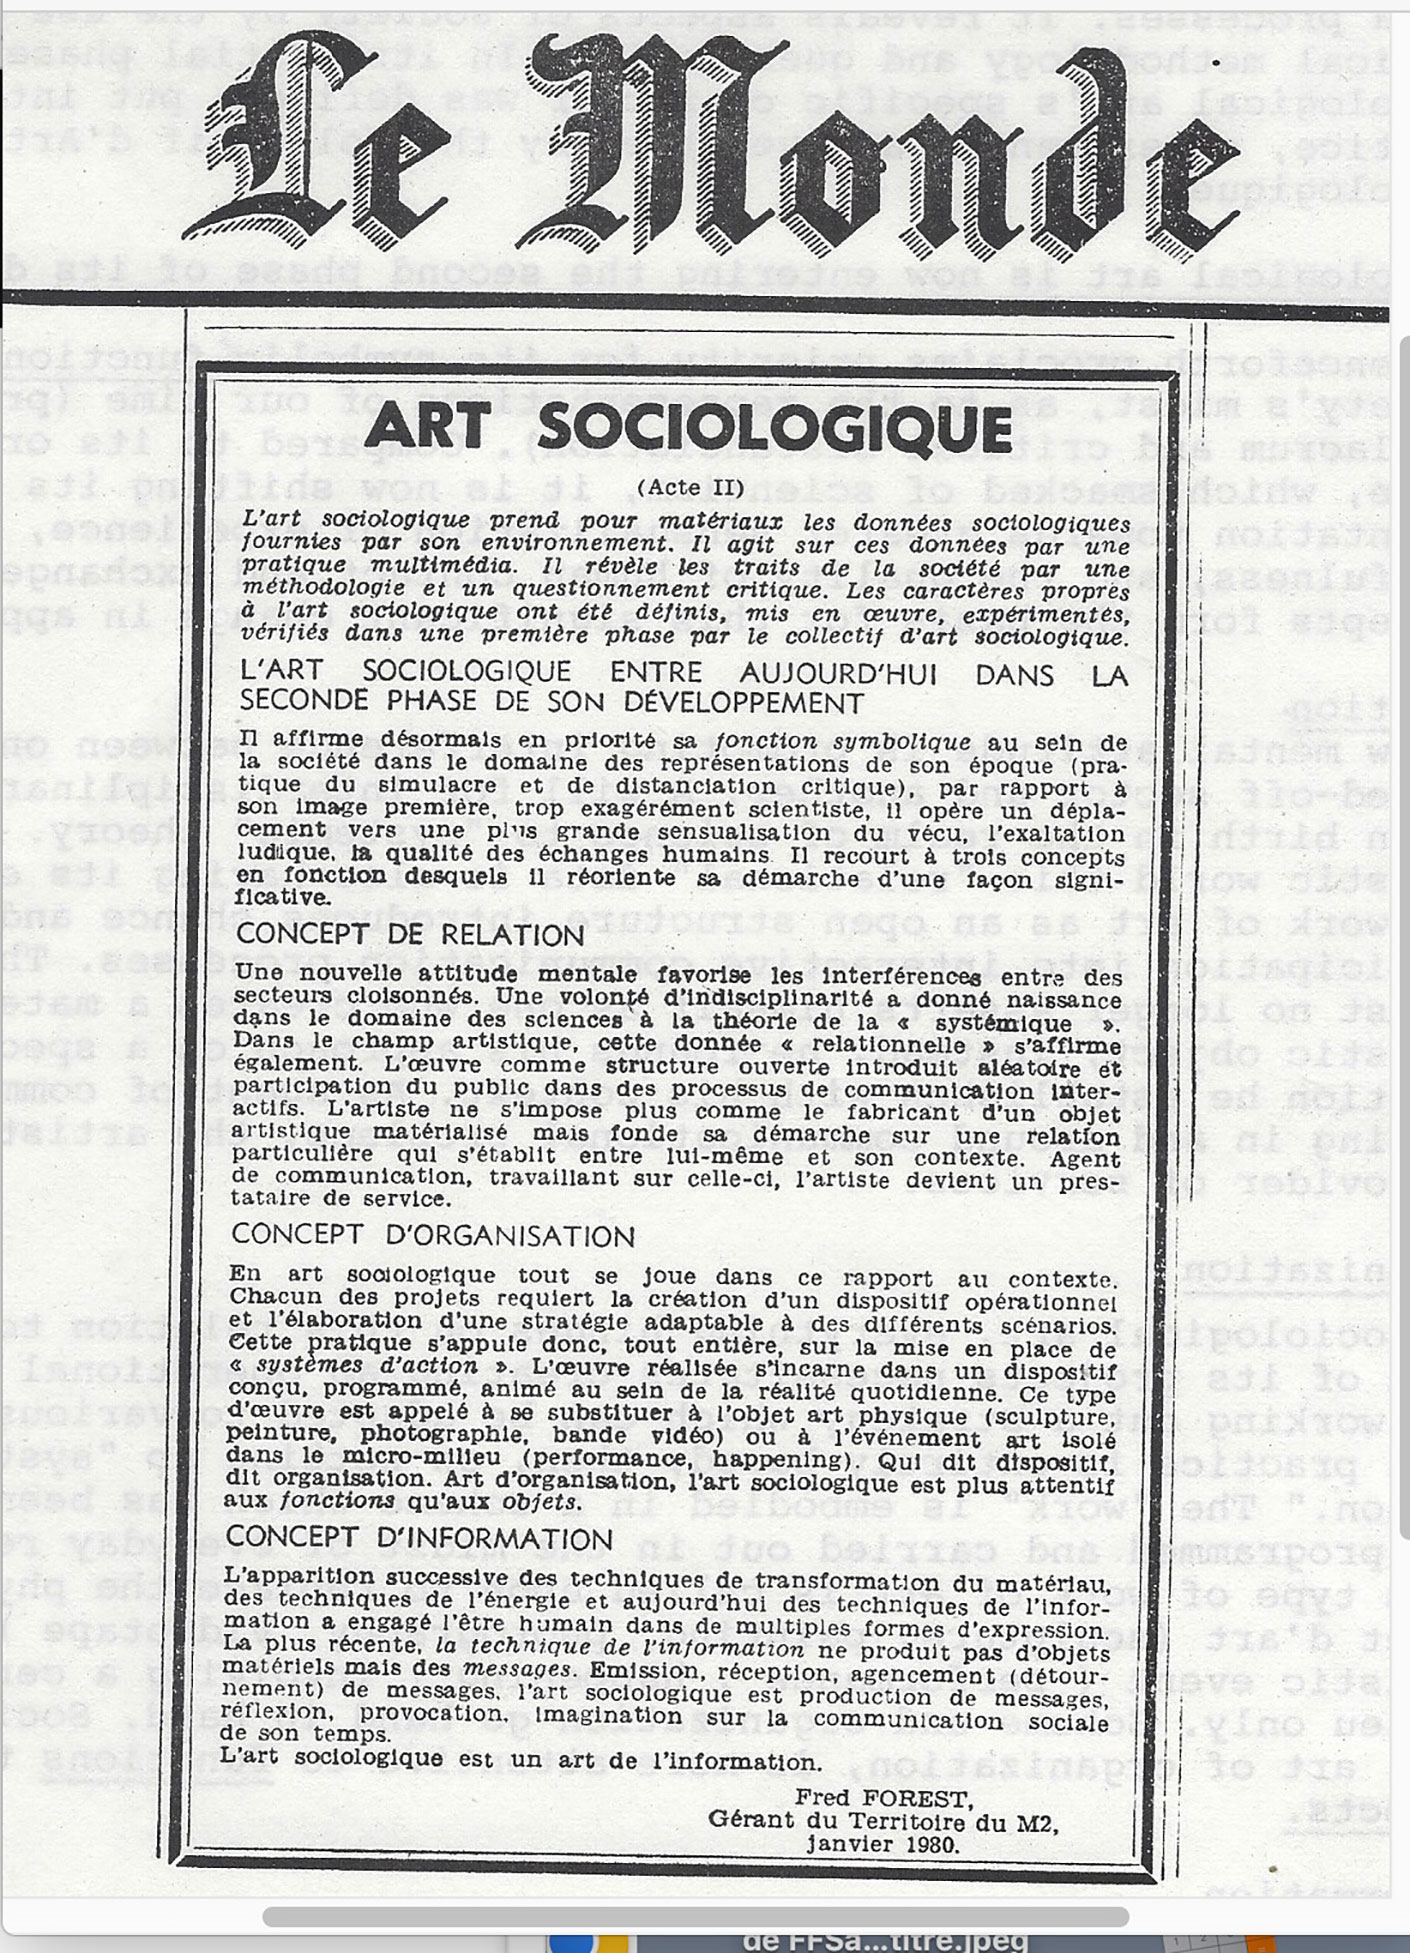 Le Monde - Manifeste Art Sociologique